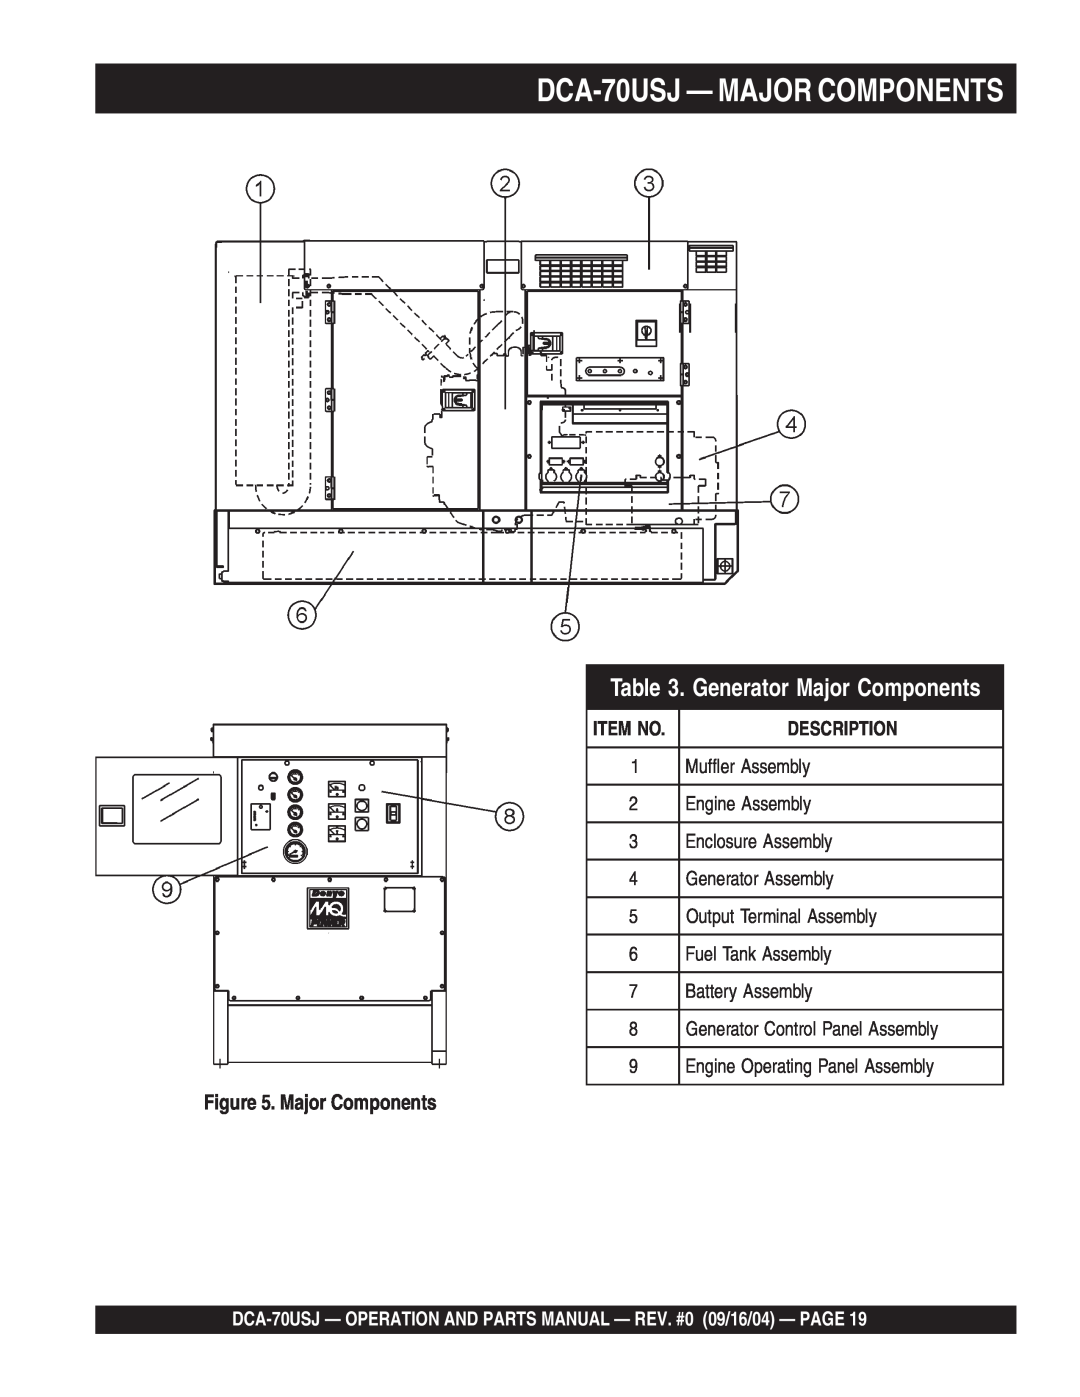 Multiquip dca-70usj operation manual DCA-70USJ— MAJOR COMPONENTS, Generator Major Components 